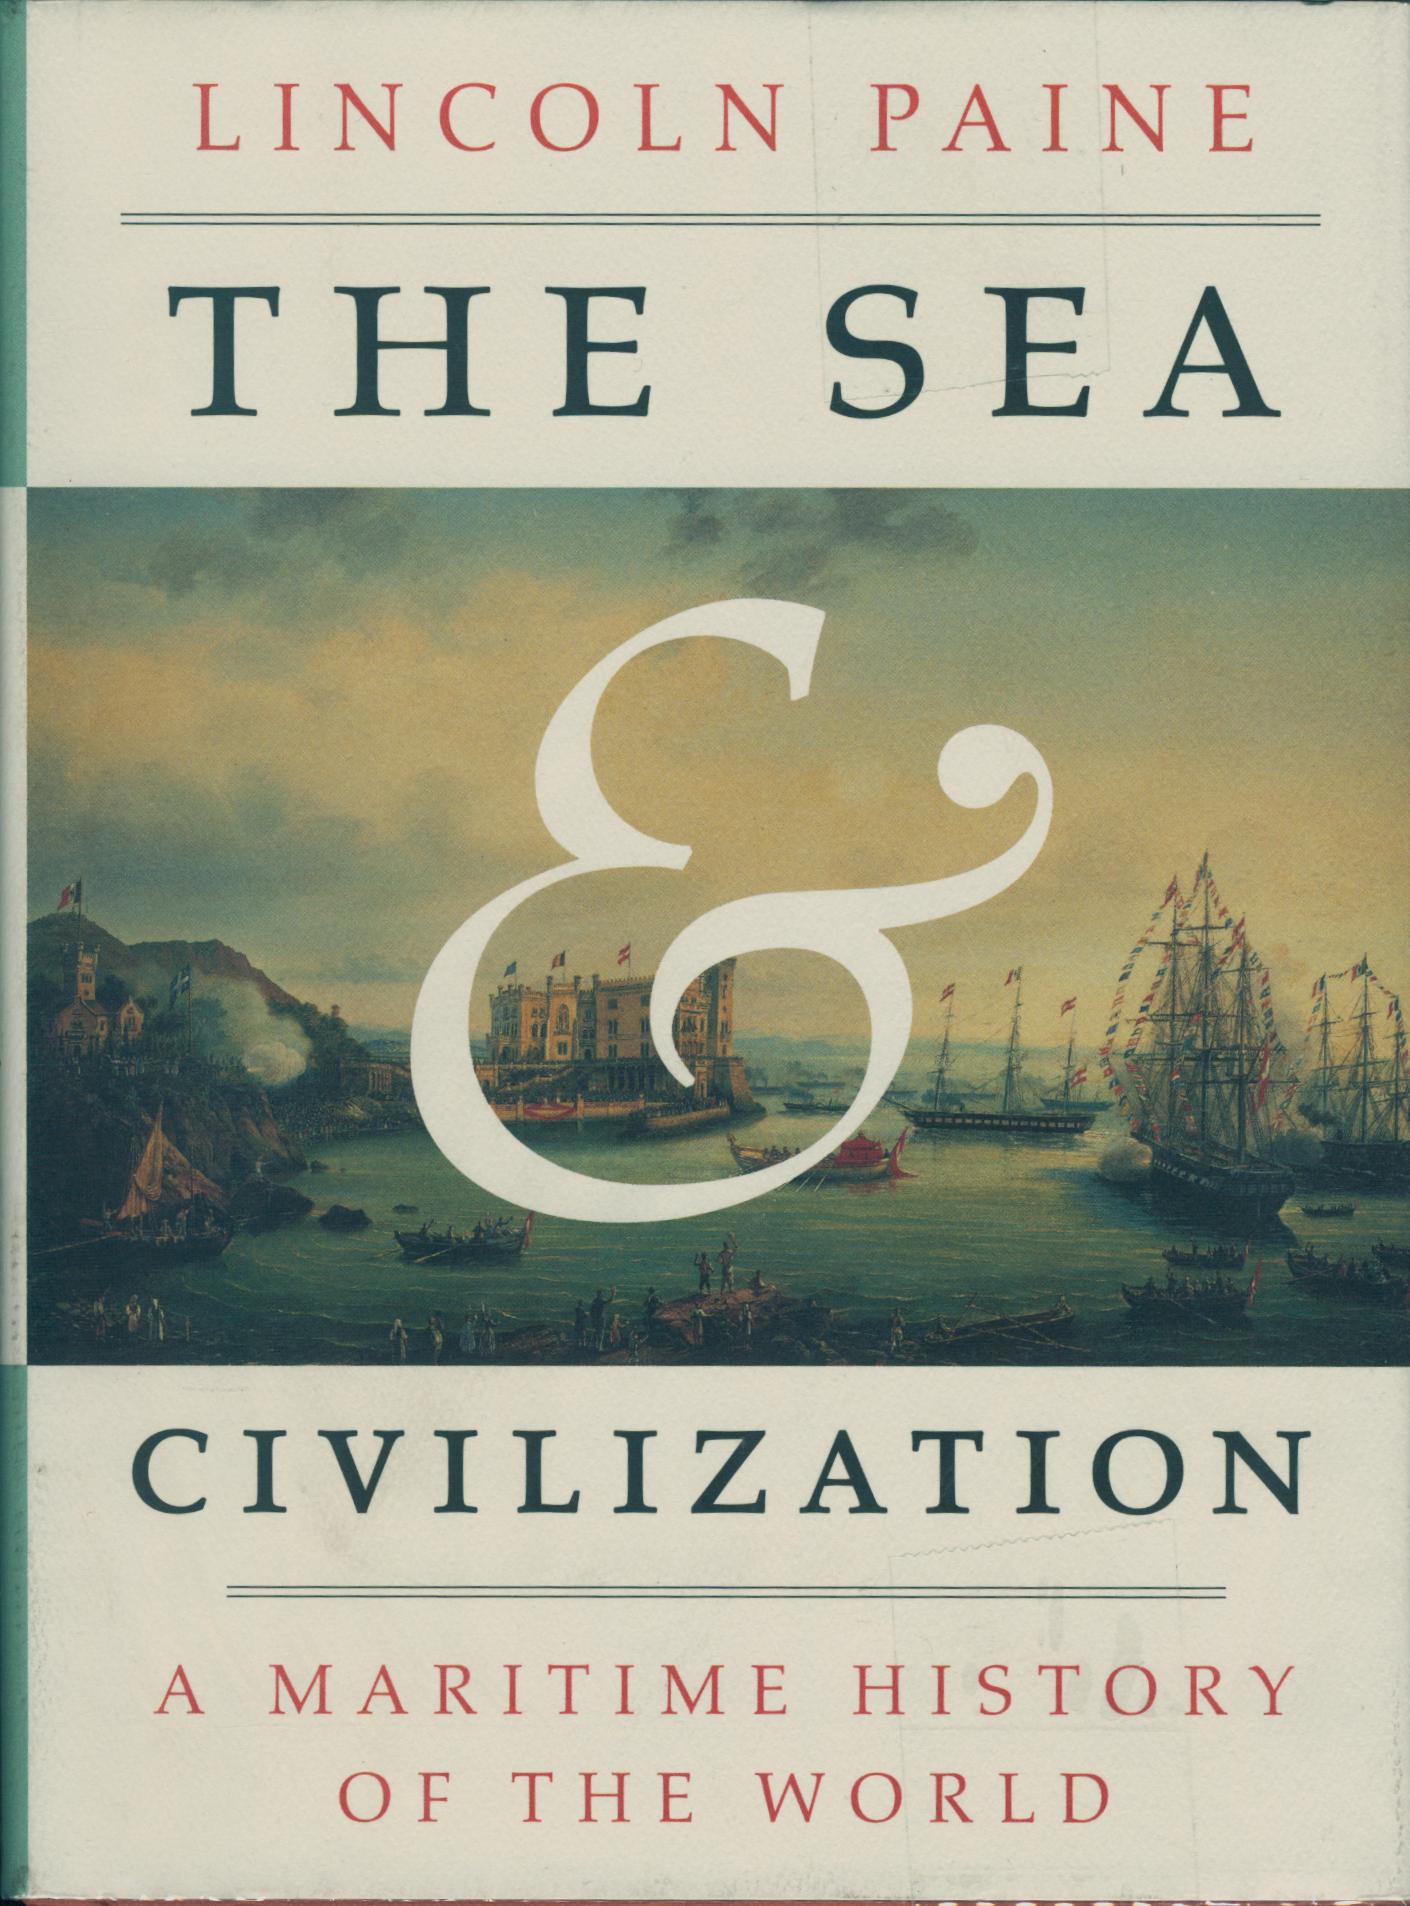 The Sea and Civilization